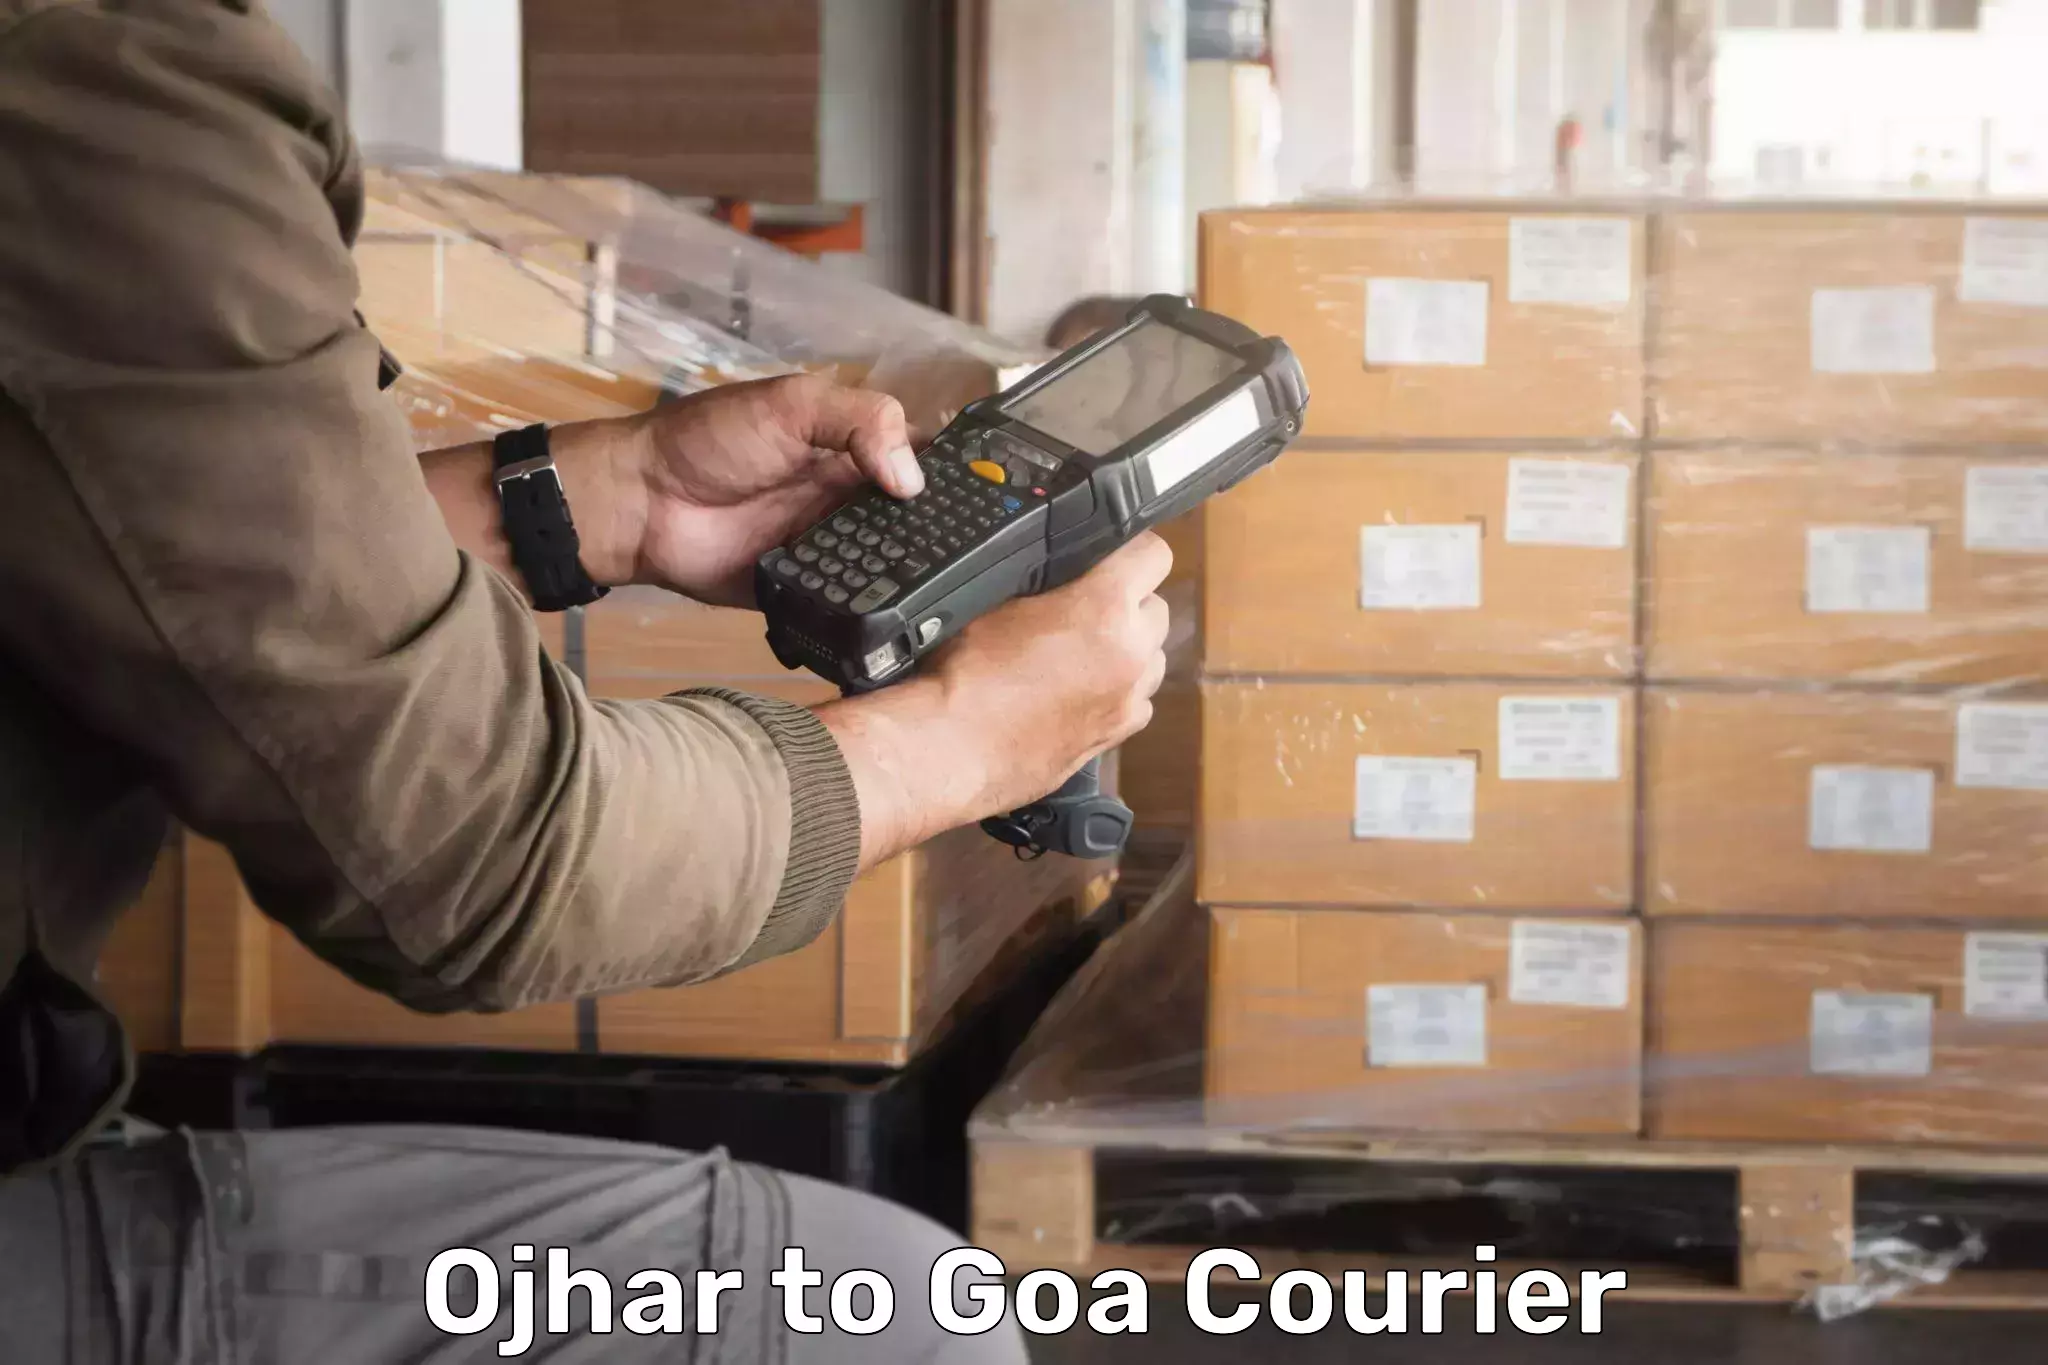 Multi-carrier shipping Ojhar to Goa University